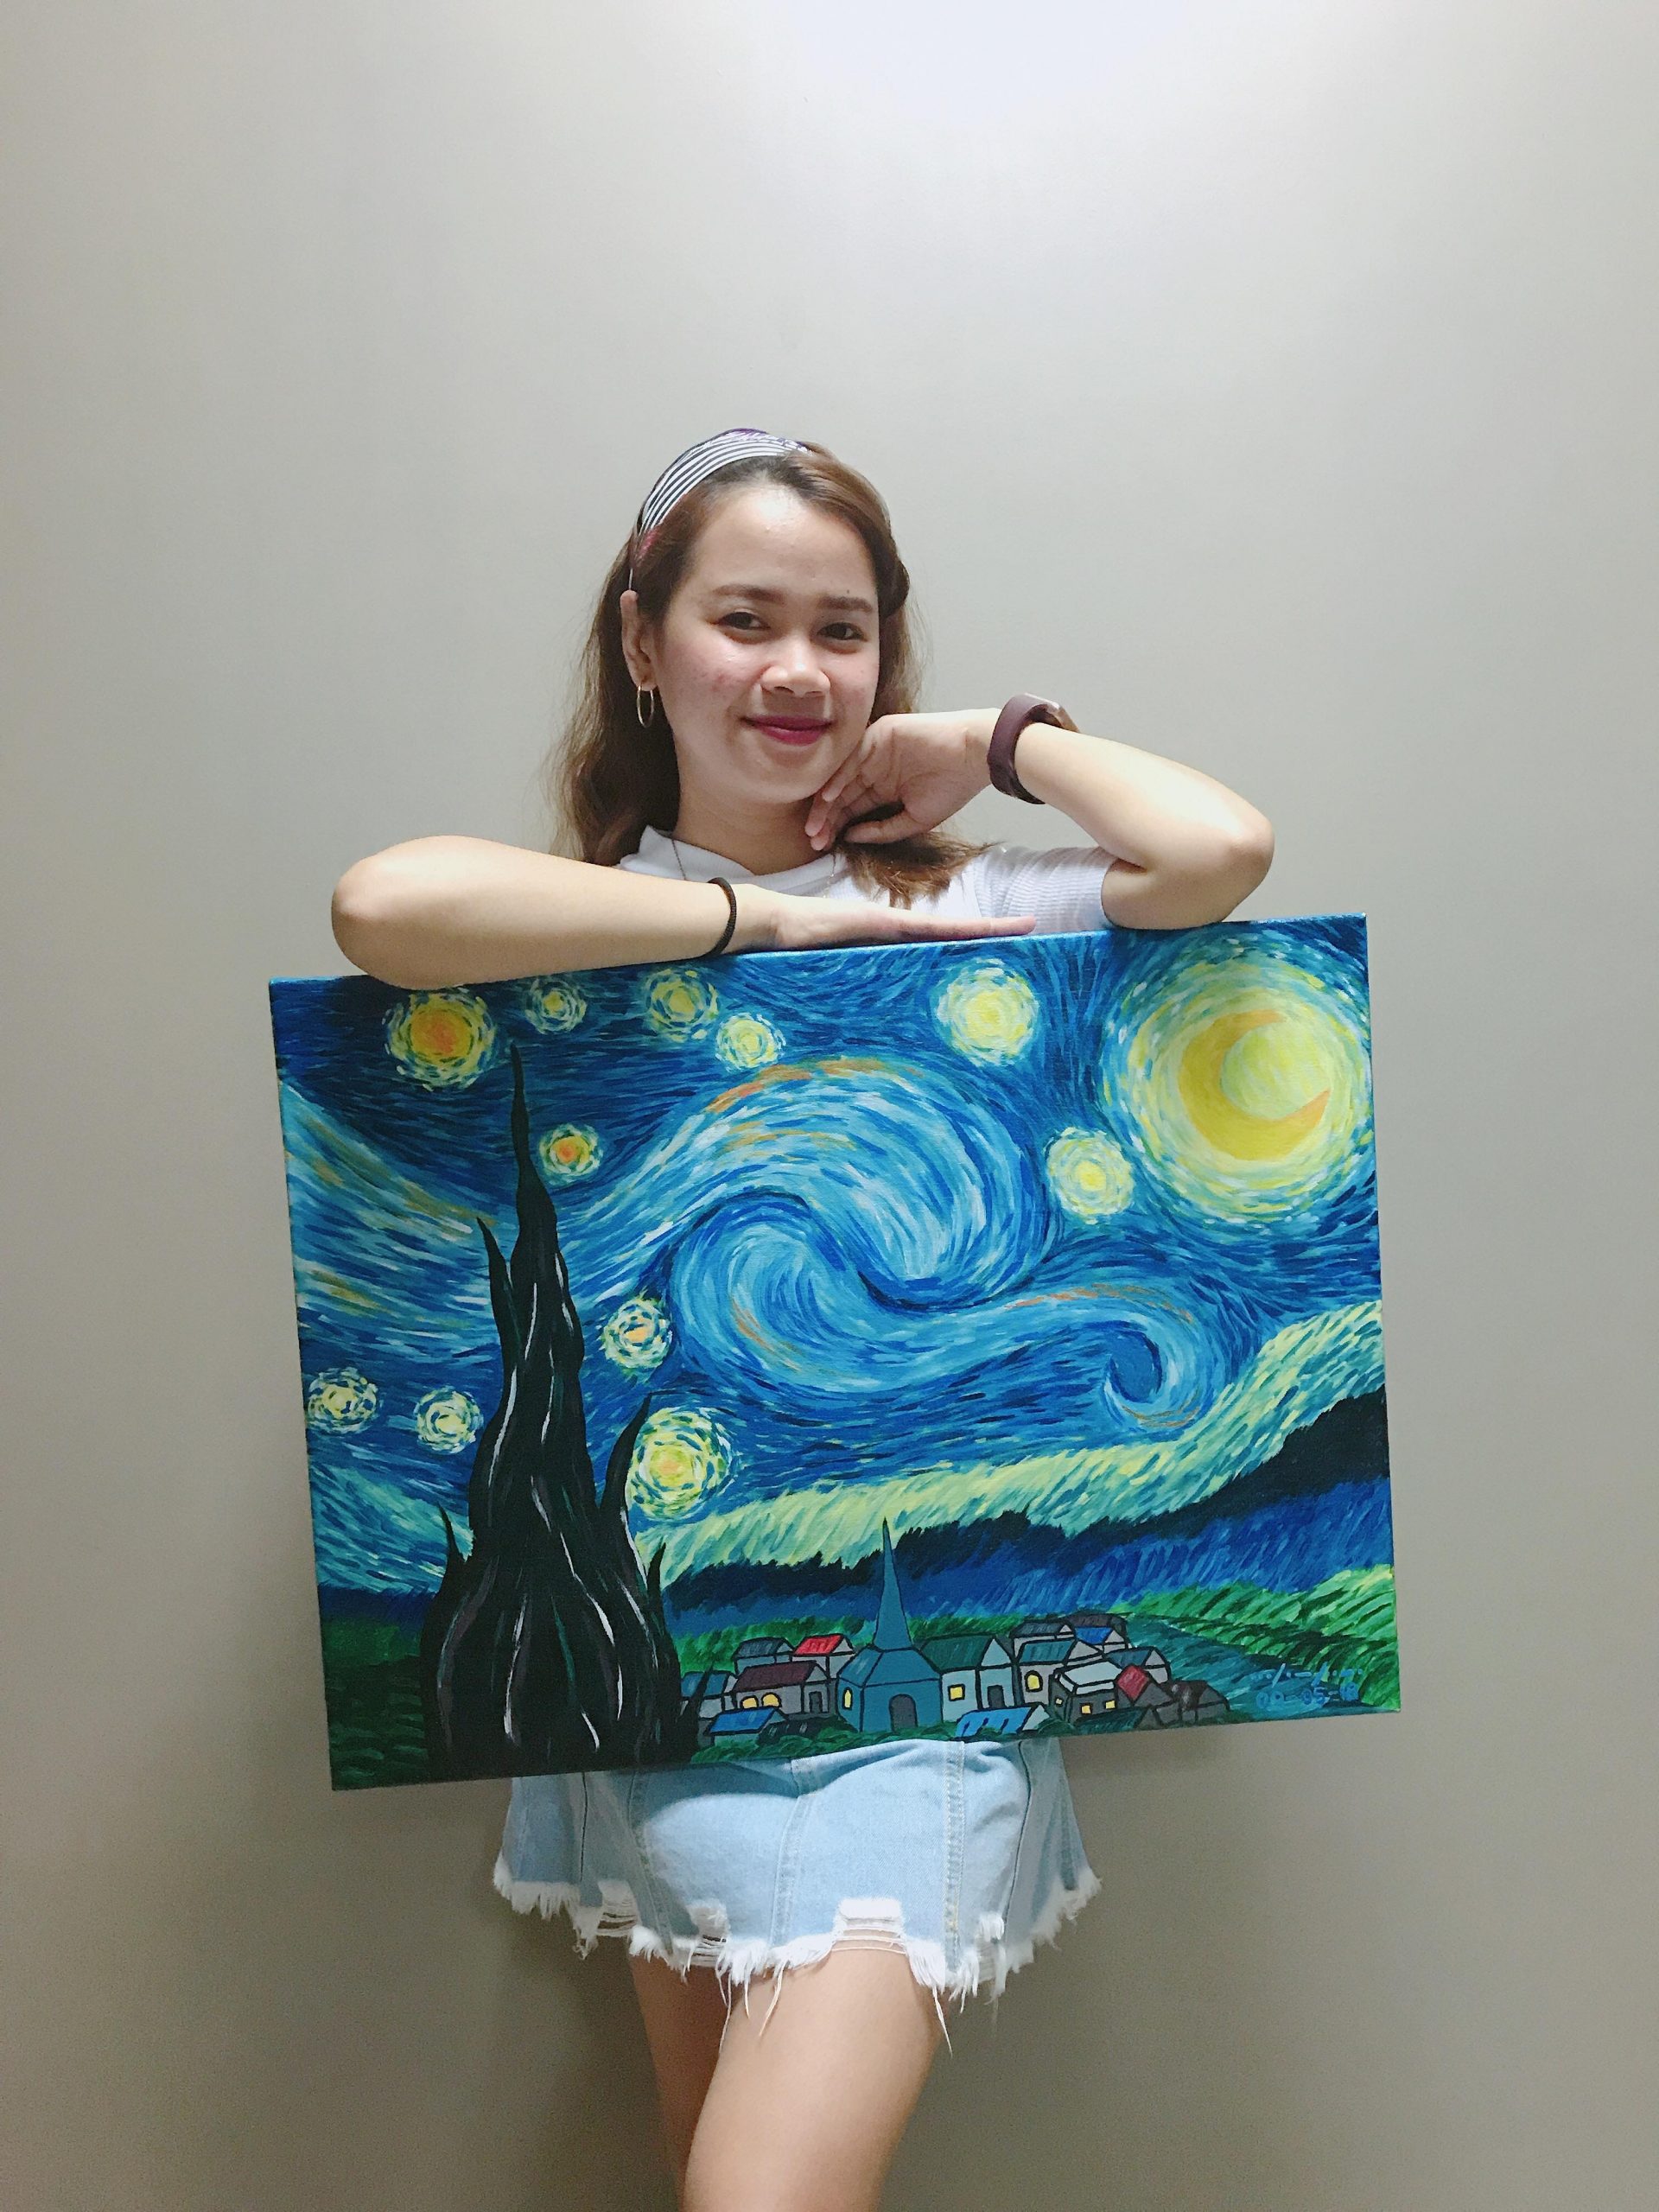 Foto meisje met schilderij. Workshop door coach voor rust kracht en eigenwaarde: Van Gogh de natuur en jij